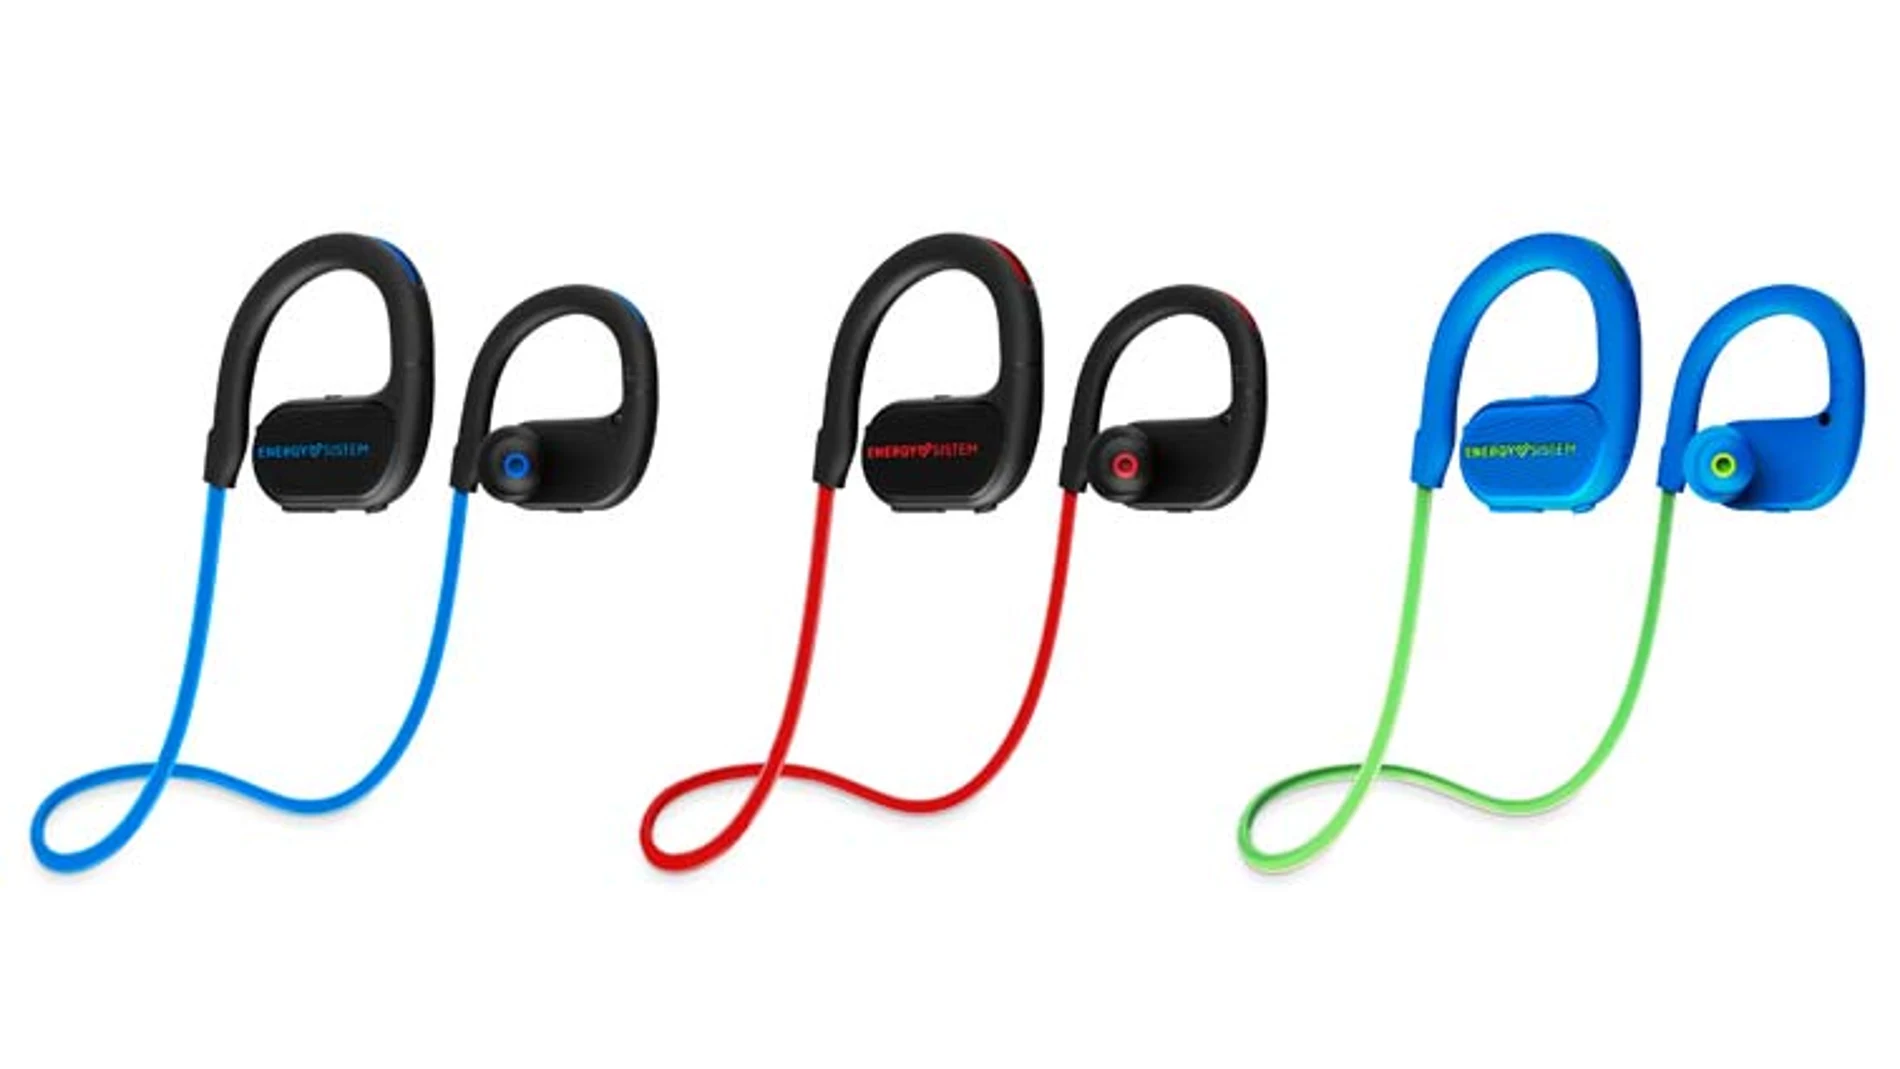 En tres combinaciones de color, los auriculares llevan un sistema de iluminación en el cable.